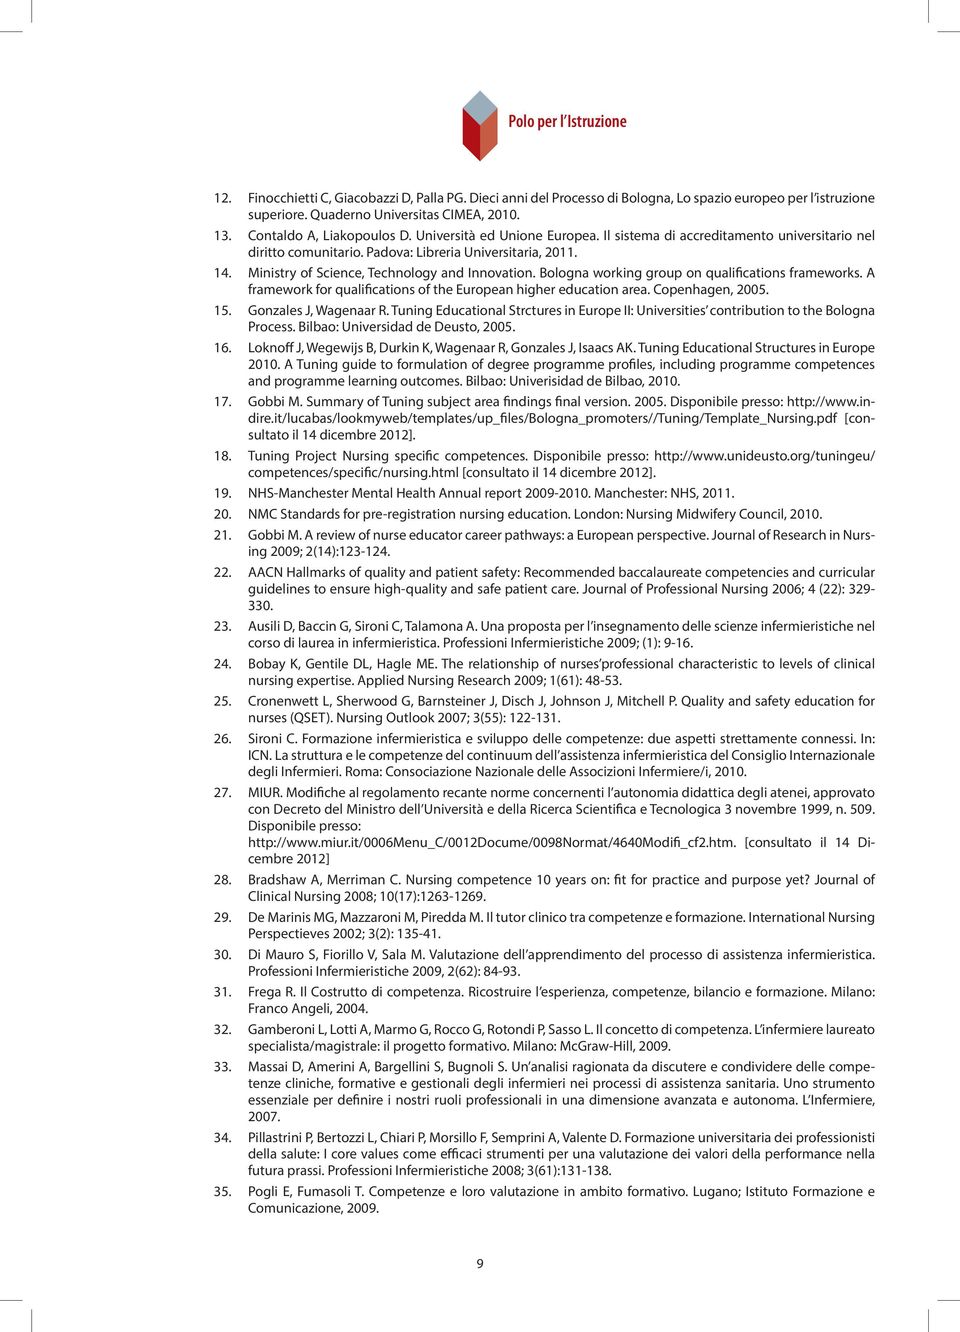 di Quaderno linee guida Universitas all esame CIMEA, di abilitazione. 2010. 13. Contaldo A, Liakopoulos D. Università ed Unione Europea.